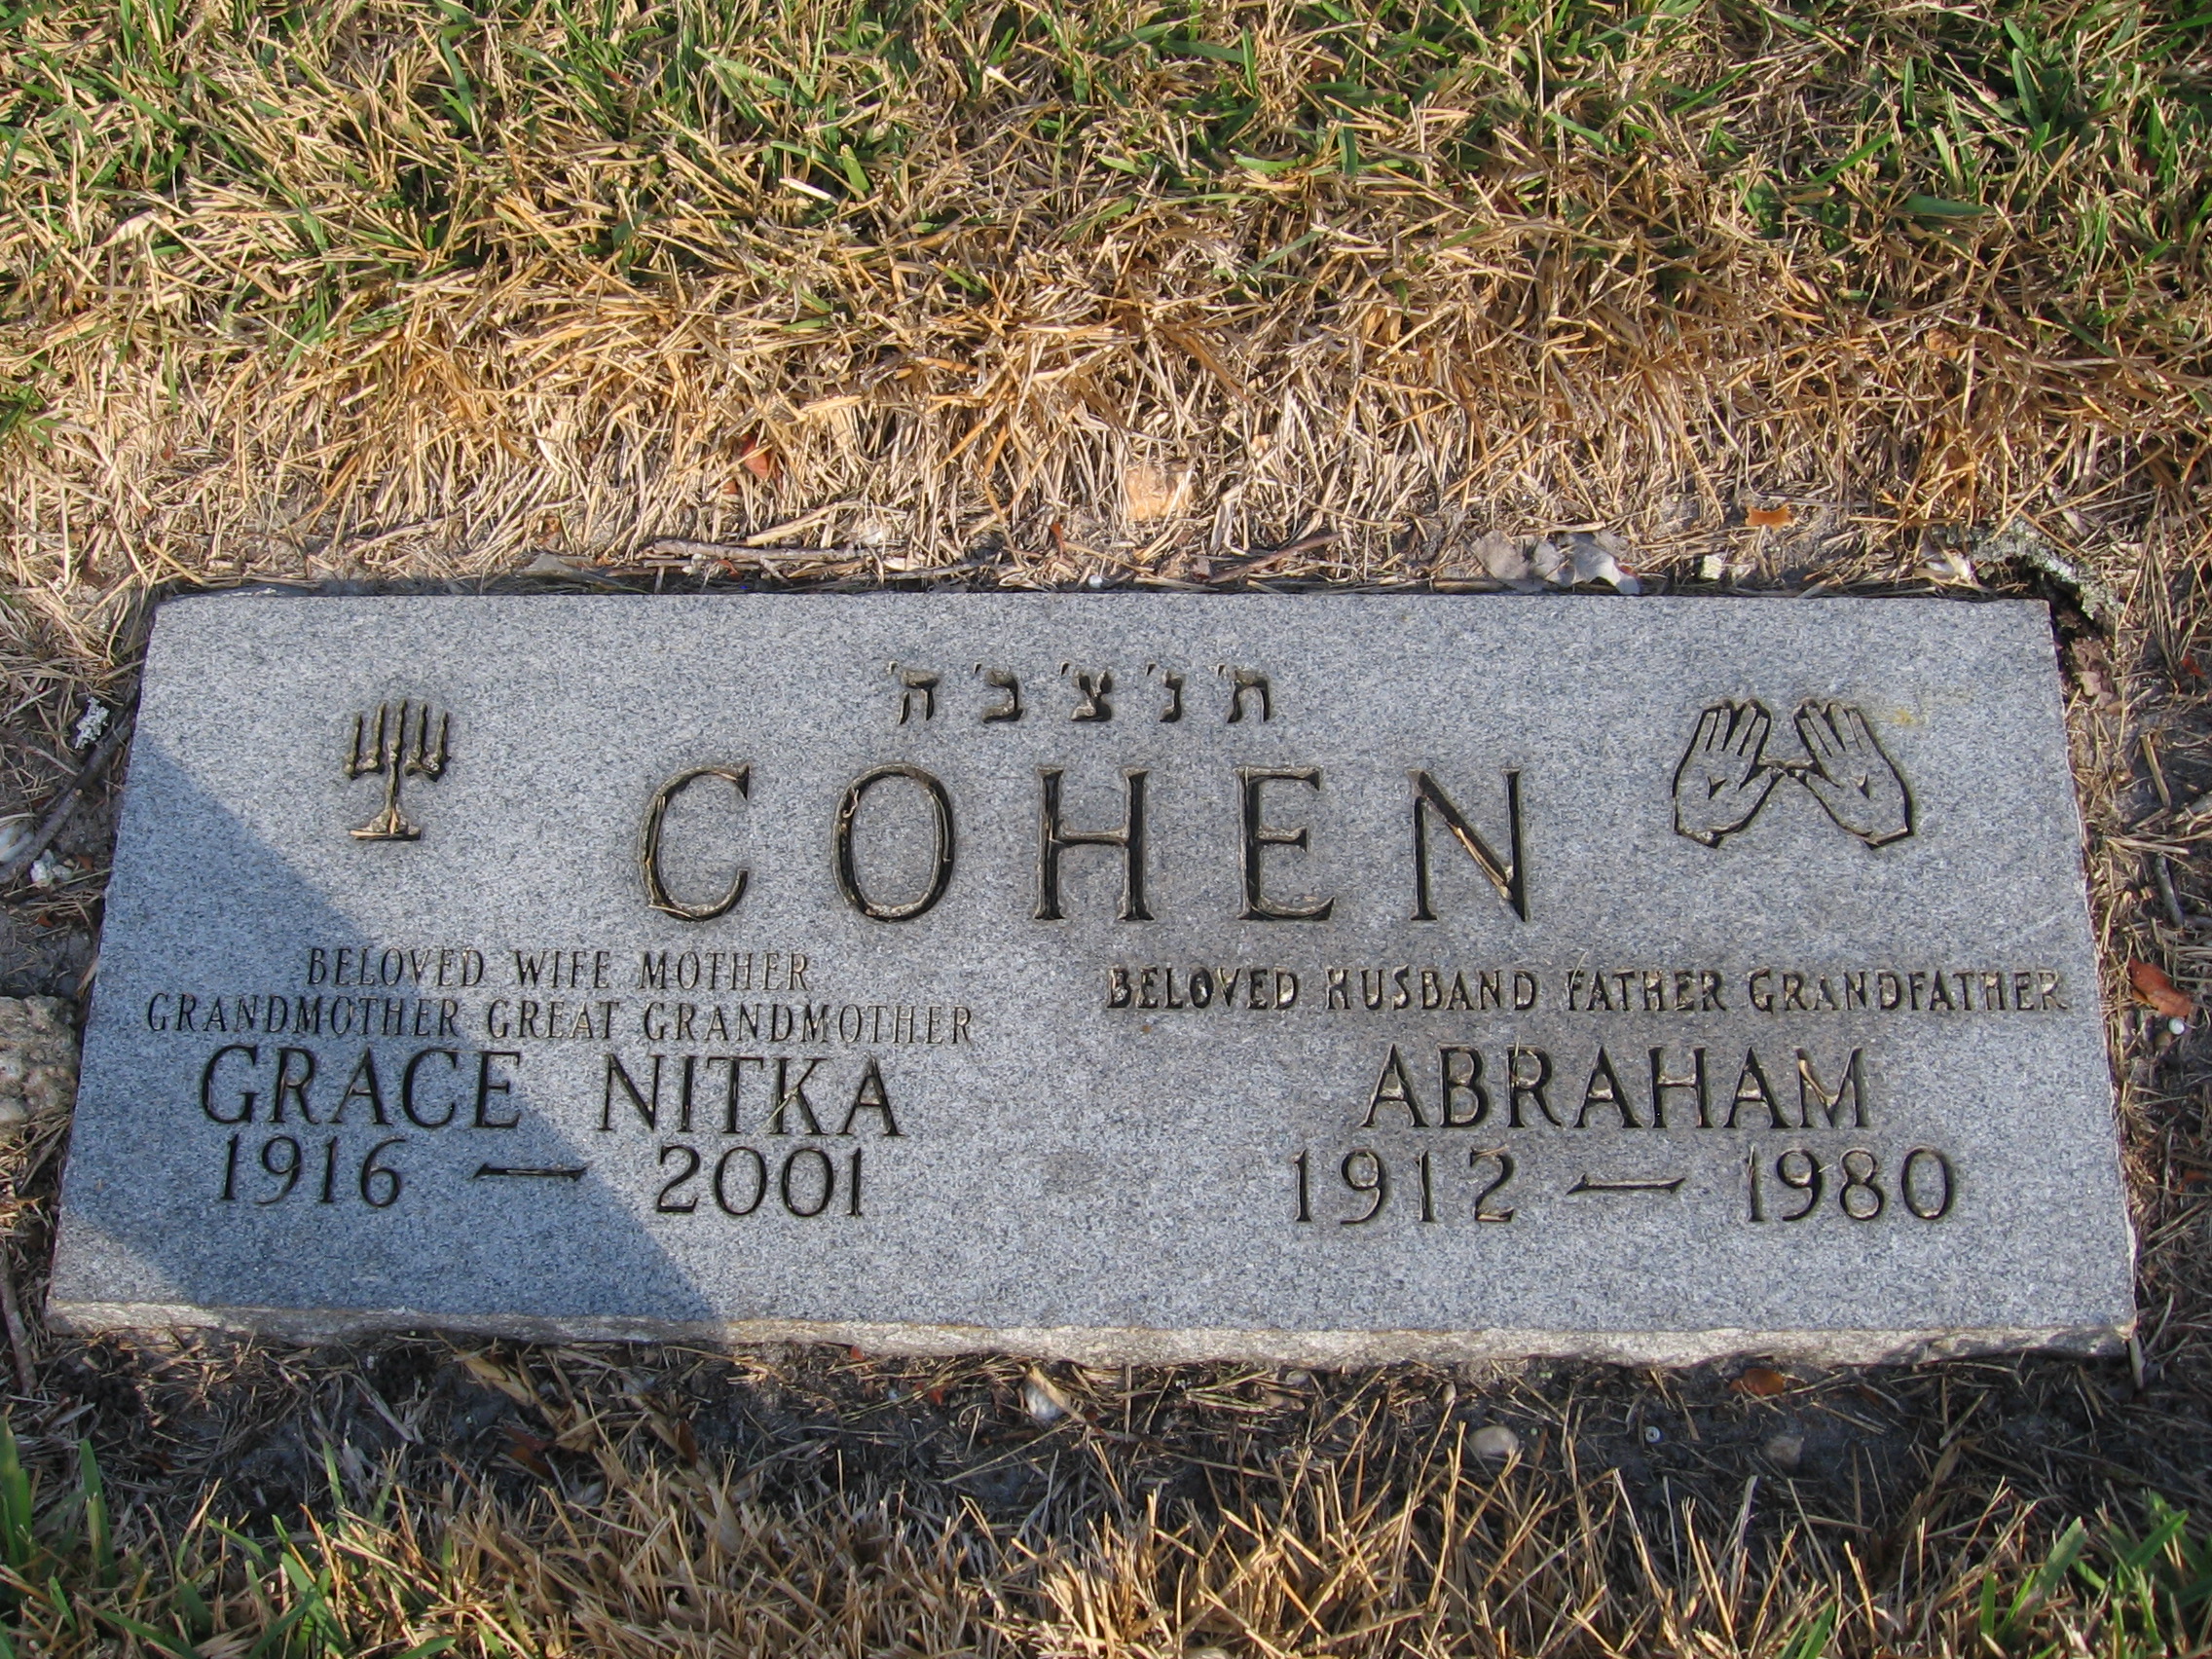 Abraham Cohen